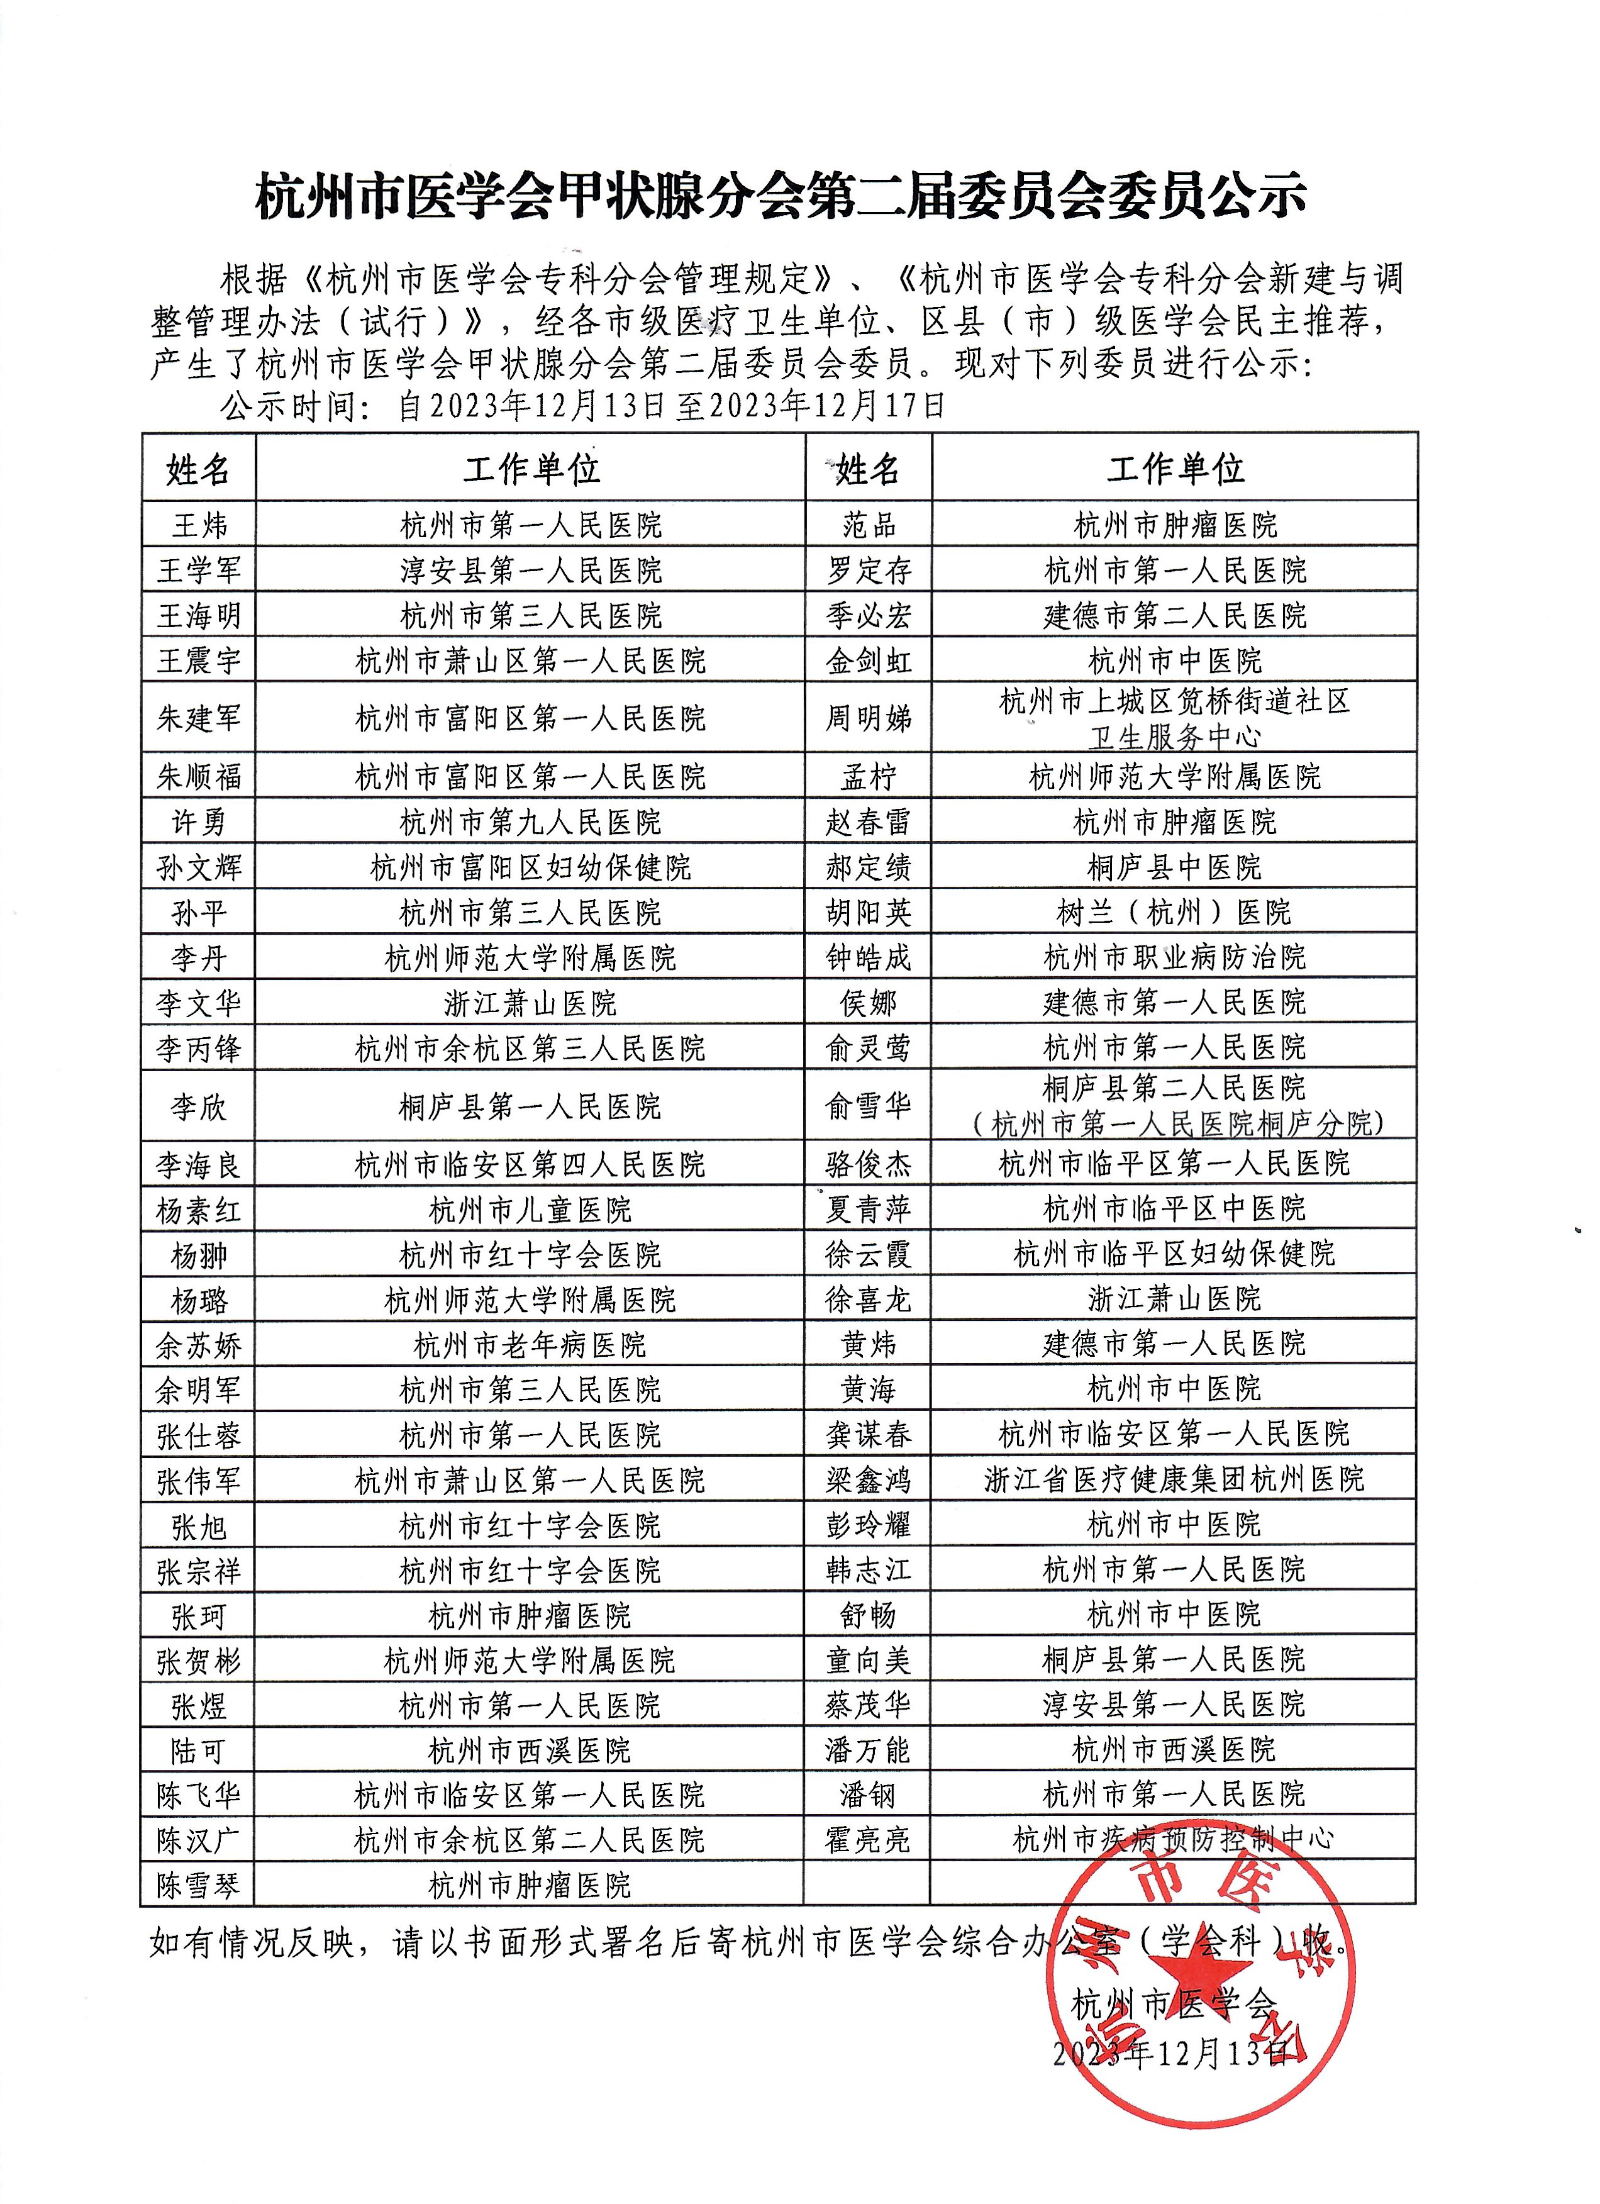 杭州市医学会甲状腺分会第二届委员会委员公示.png